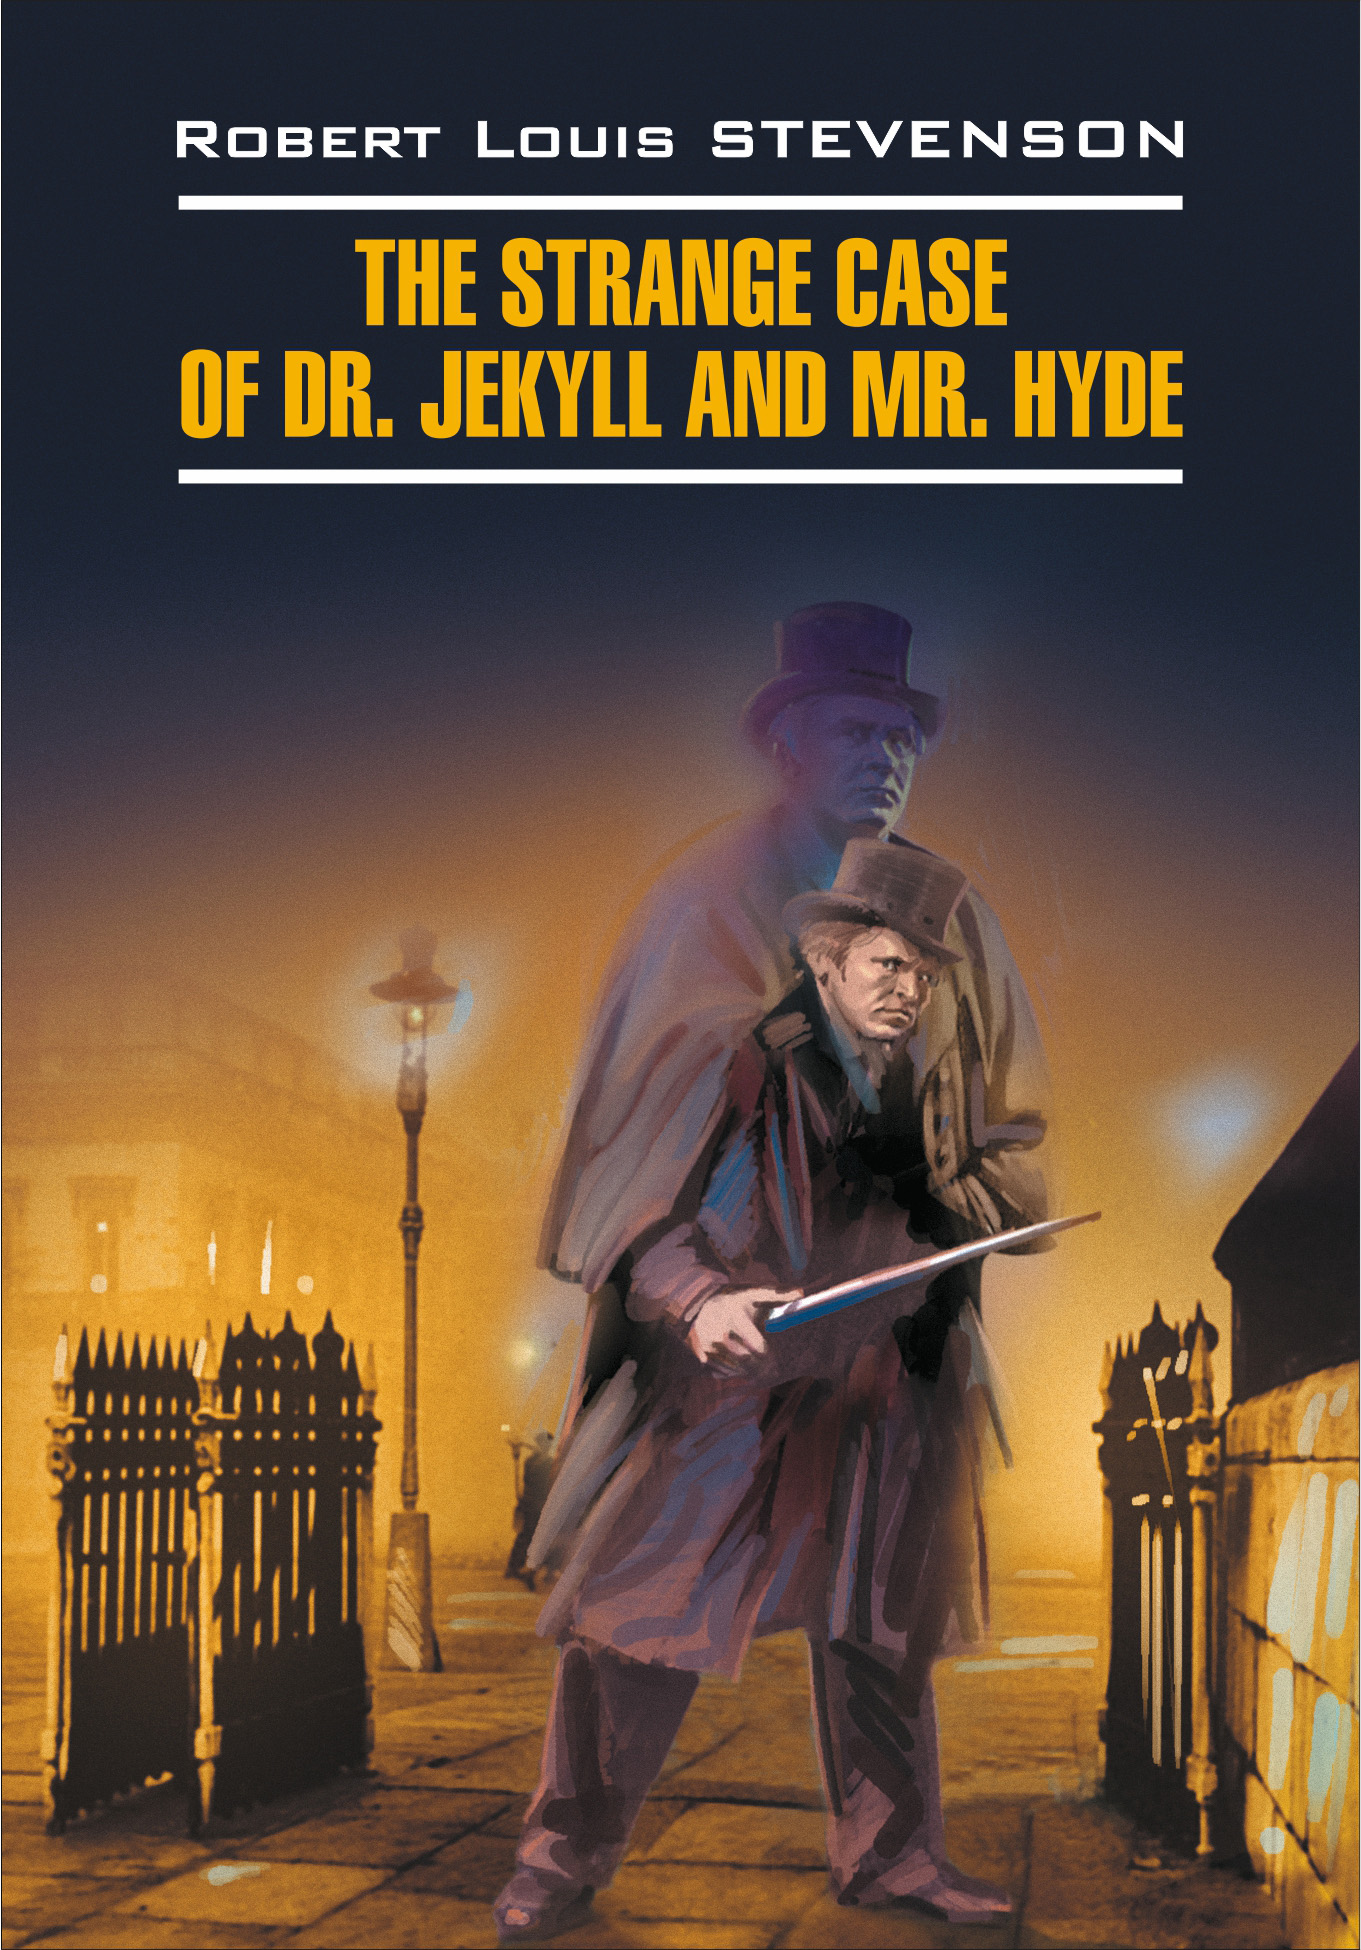 Книга The Strange Case of Dr. Jekyll and Mr. Hyde / Странная история доктора Джекила и мистера Хайда. Книга для чтения на английском языке из серии , созданная Роберт Льюис Стивенсон, Е. Тигонен, может относится к жанру Иностранные языки, Литература 19 века, Зарубежная классика. Стоимость электронной книги The Strange Case of Dr. Jekyll and Mr. Hyde / Странная история доктора Джекила и мистера Хайда. Книга для чтения на английском языке с идентификатором 36352273 составляет 101.00 руб.